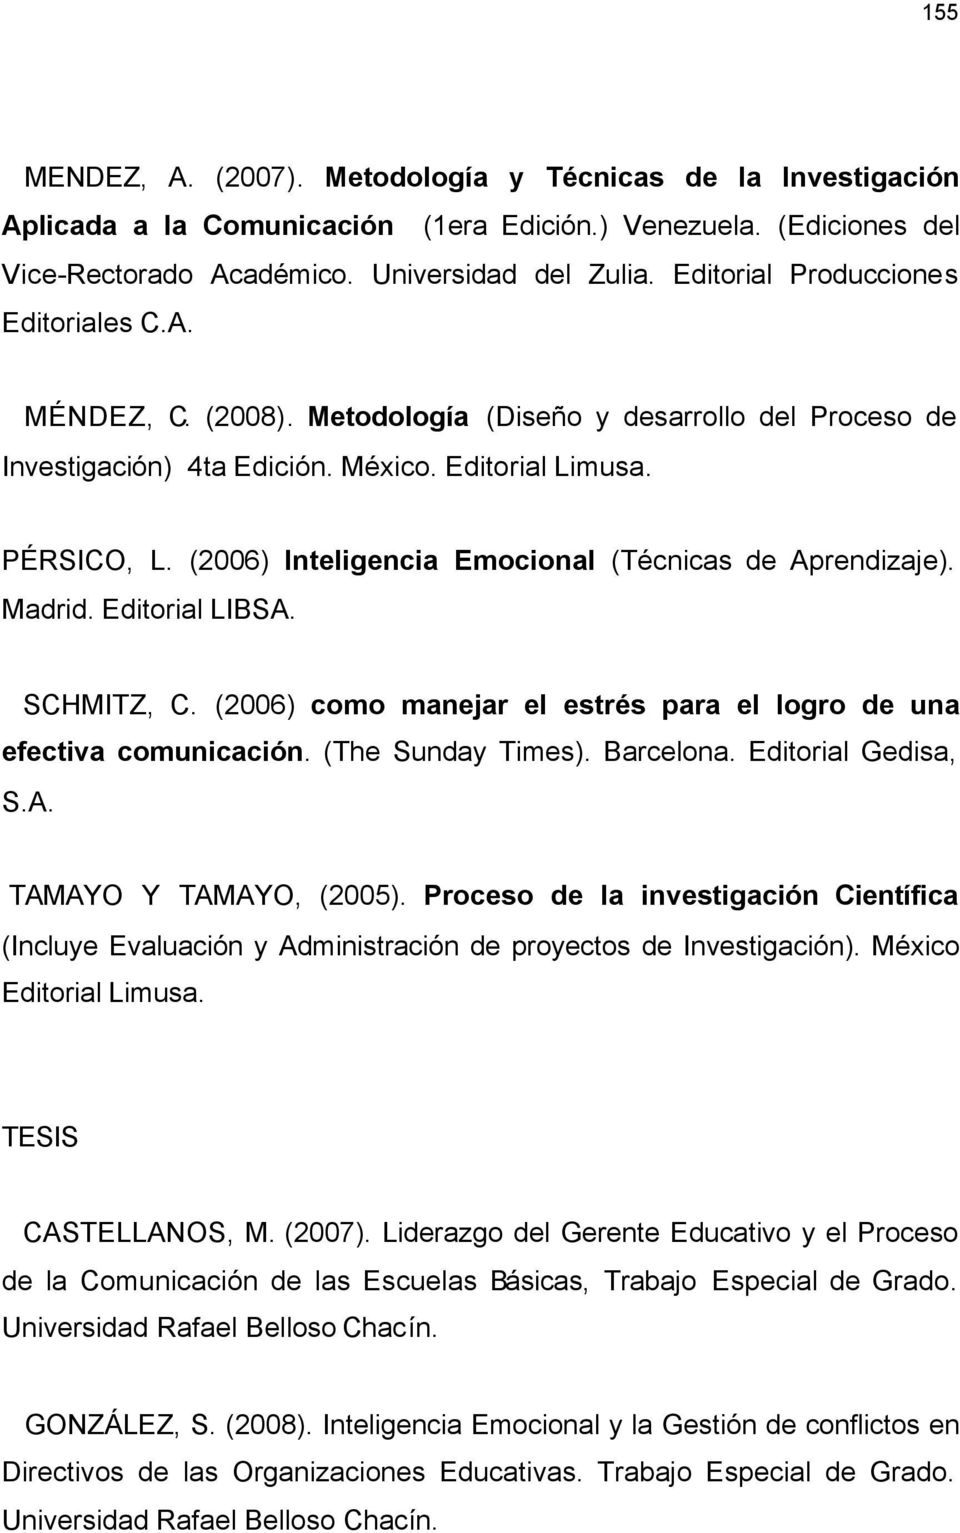 (2006) Inteligencia Emocional (Técnicas de Aprendizaje). Madrid. Editorial LIBSA. SCHMITZ, C. (2006) como manejar el estrés para el logro de una efectiva comunicación. (The Sunday Times). Barcelona.